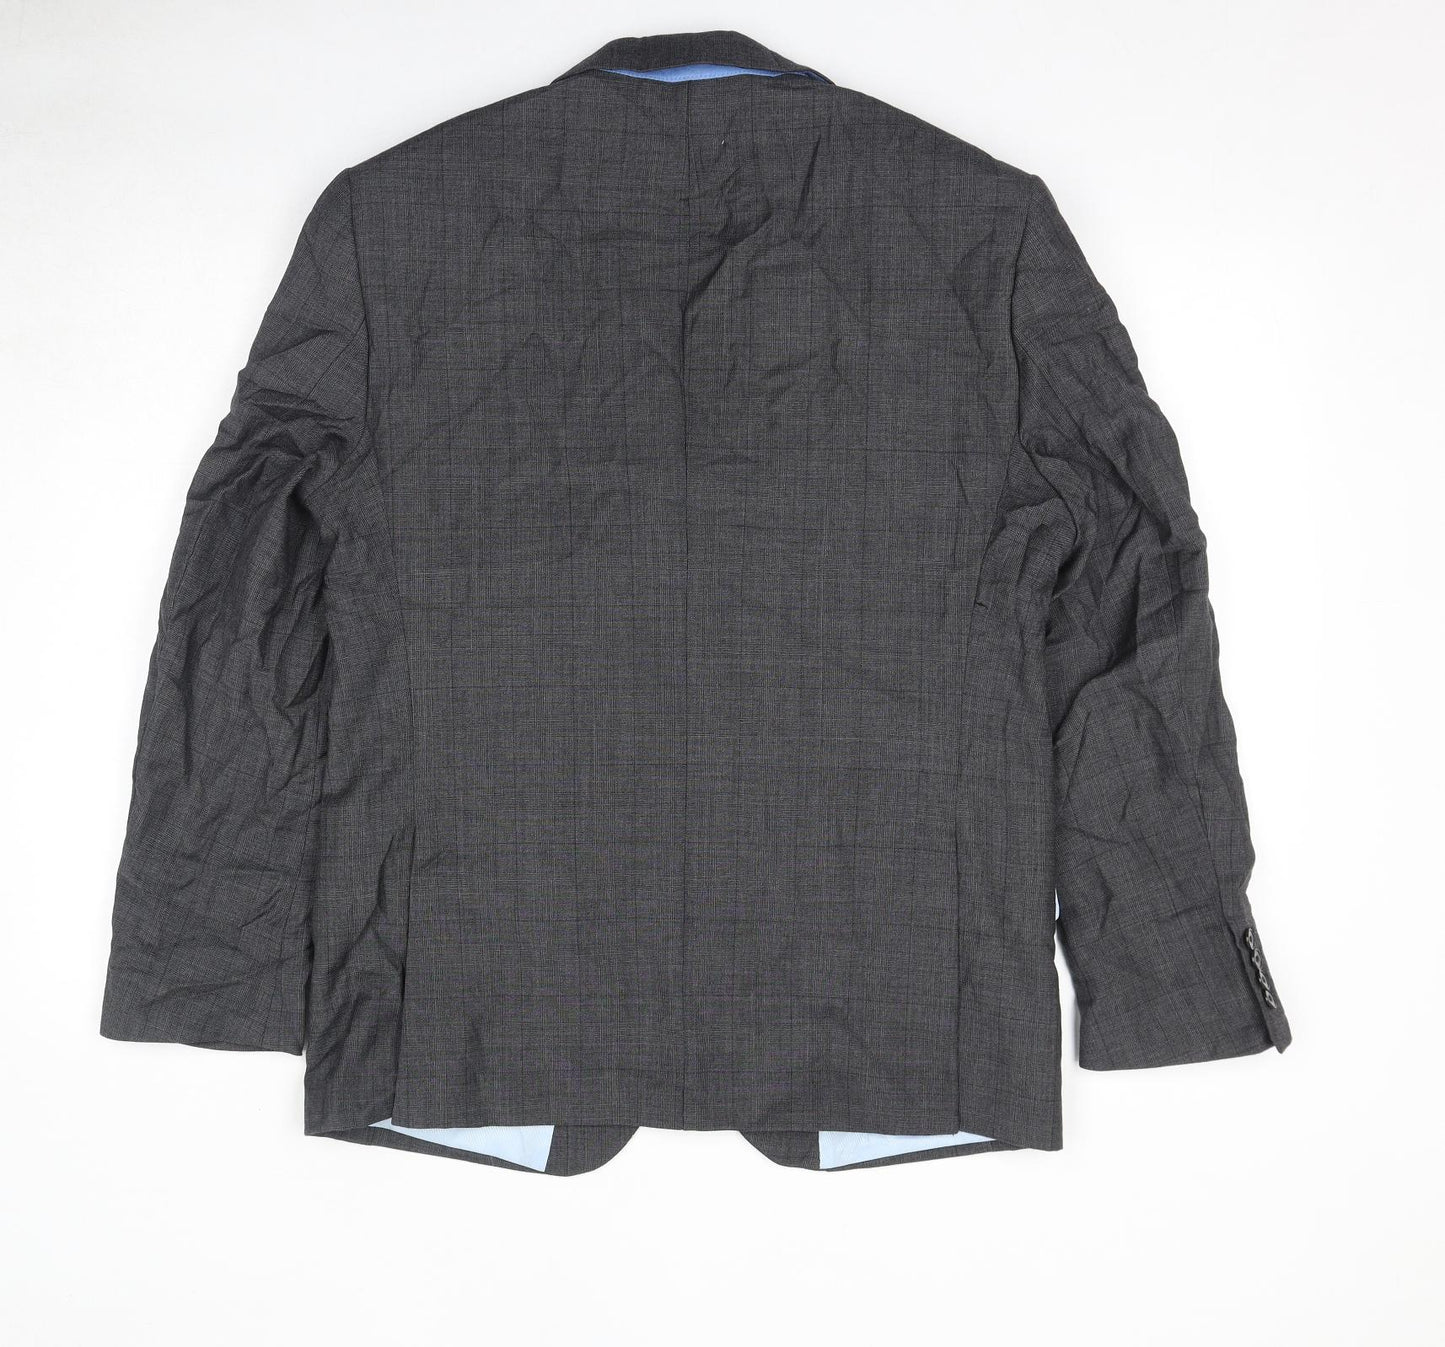 Marks and Spencer Mens Grey Wool Jacket Blazer Size 40 Regular